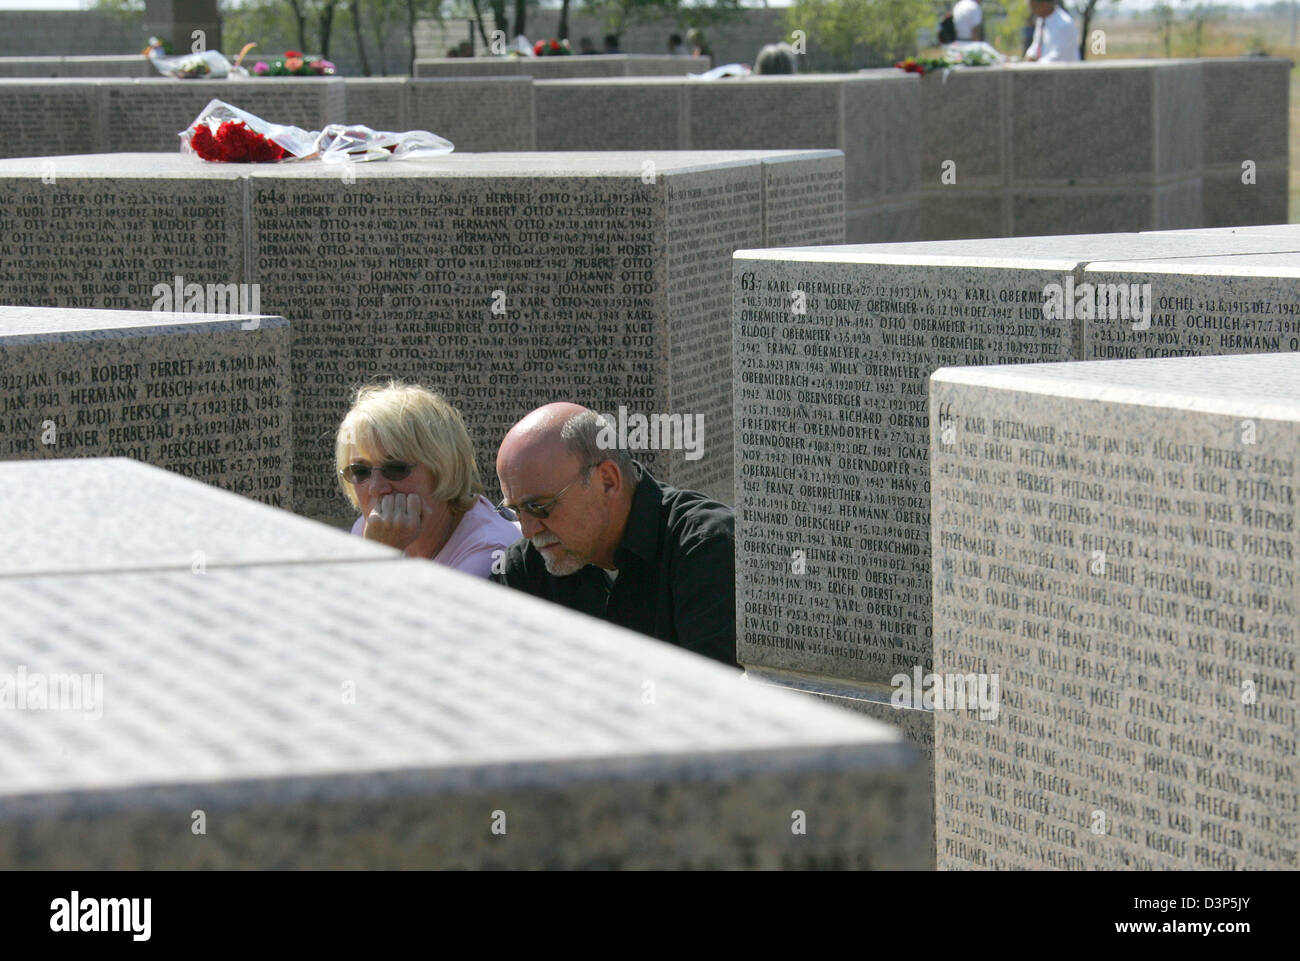 Menschen trauern um die Granit-Gedenksteine auf dem Soldatenfriedhof für deutsche Soldaten in Rossoschka bei Wolgograd (ehemals Stalingrad), Russische Föderation, Samstag, 9. September 2006. An diesem Tag wurde der Friedhof eingeweiht. Foto: Uwe Zucchi Stockfoto